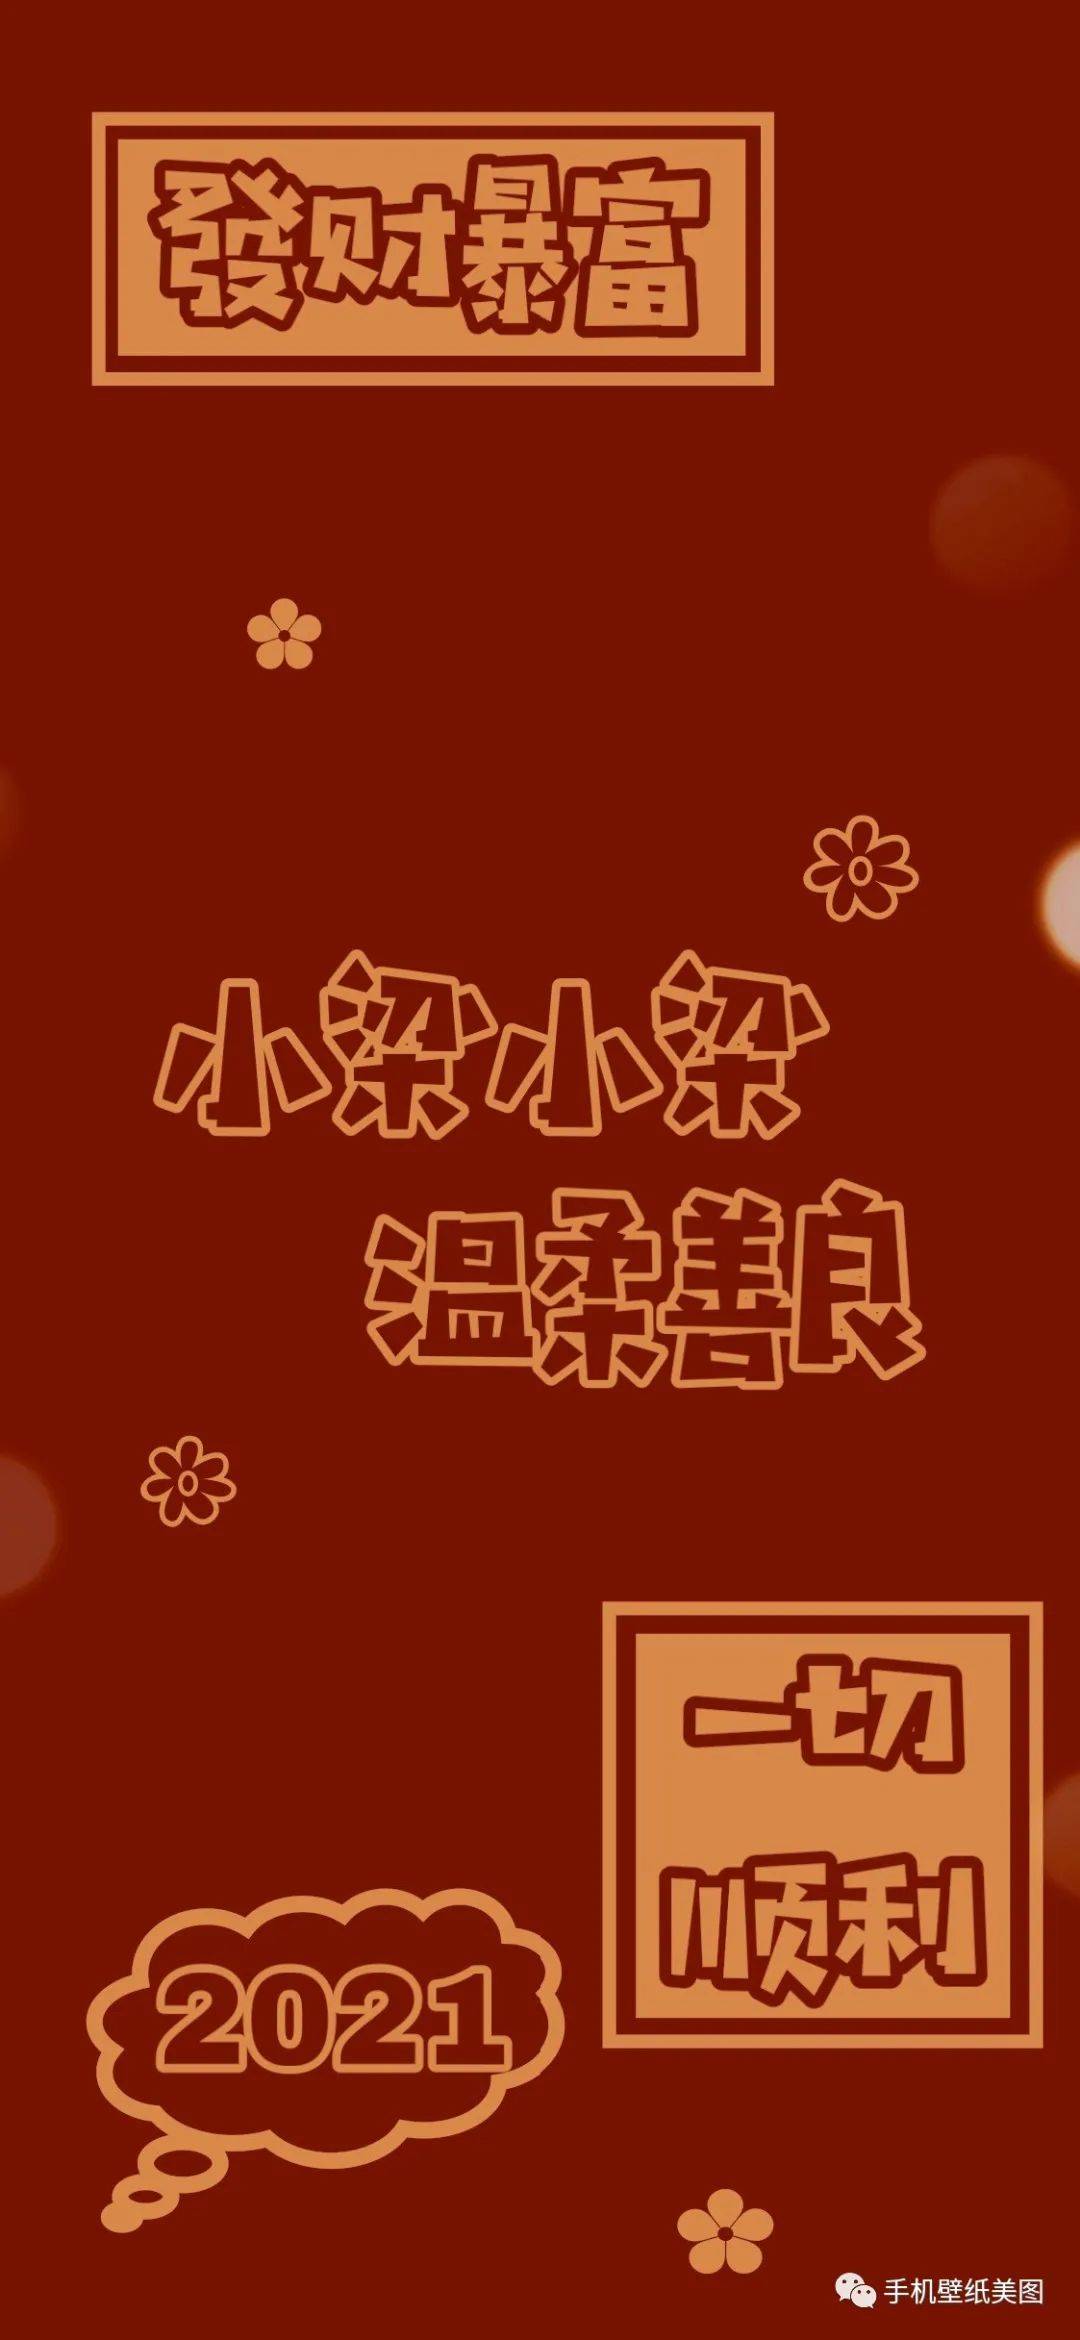 【博亚体育app官网入口】
2021姓氏壁纸制作 百家姓壁纸大全(图1)